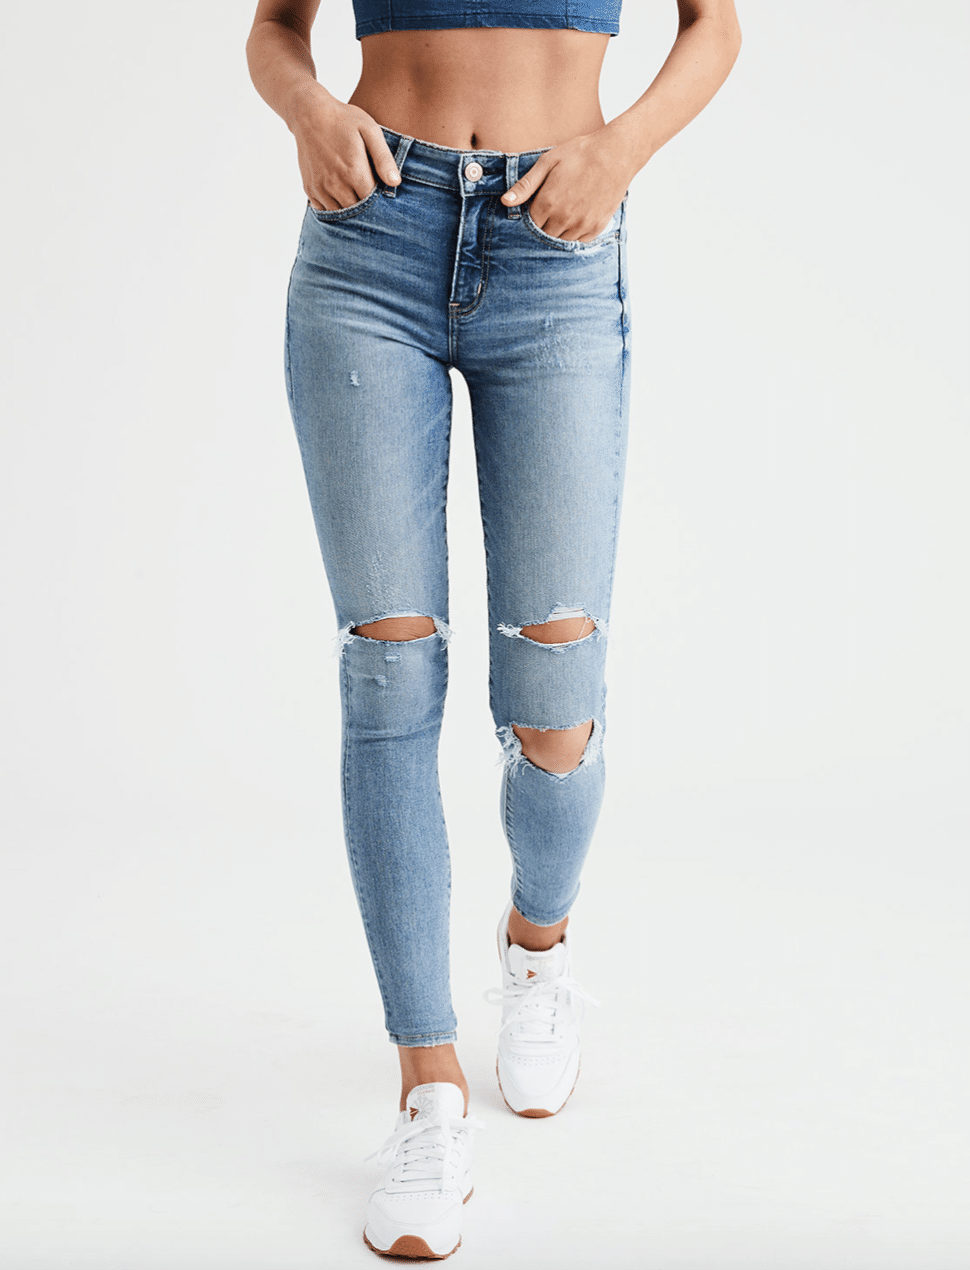 best pacsun jeans